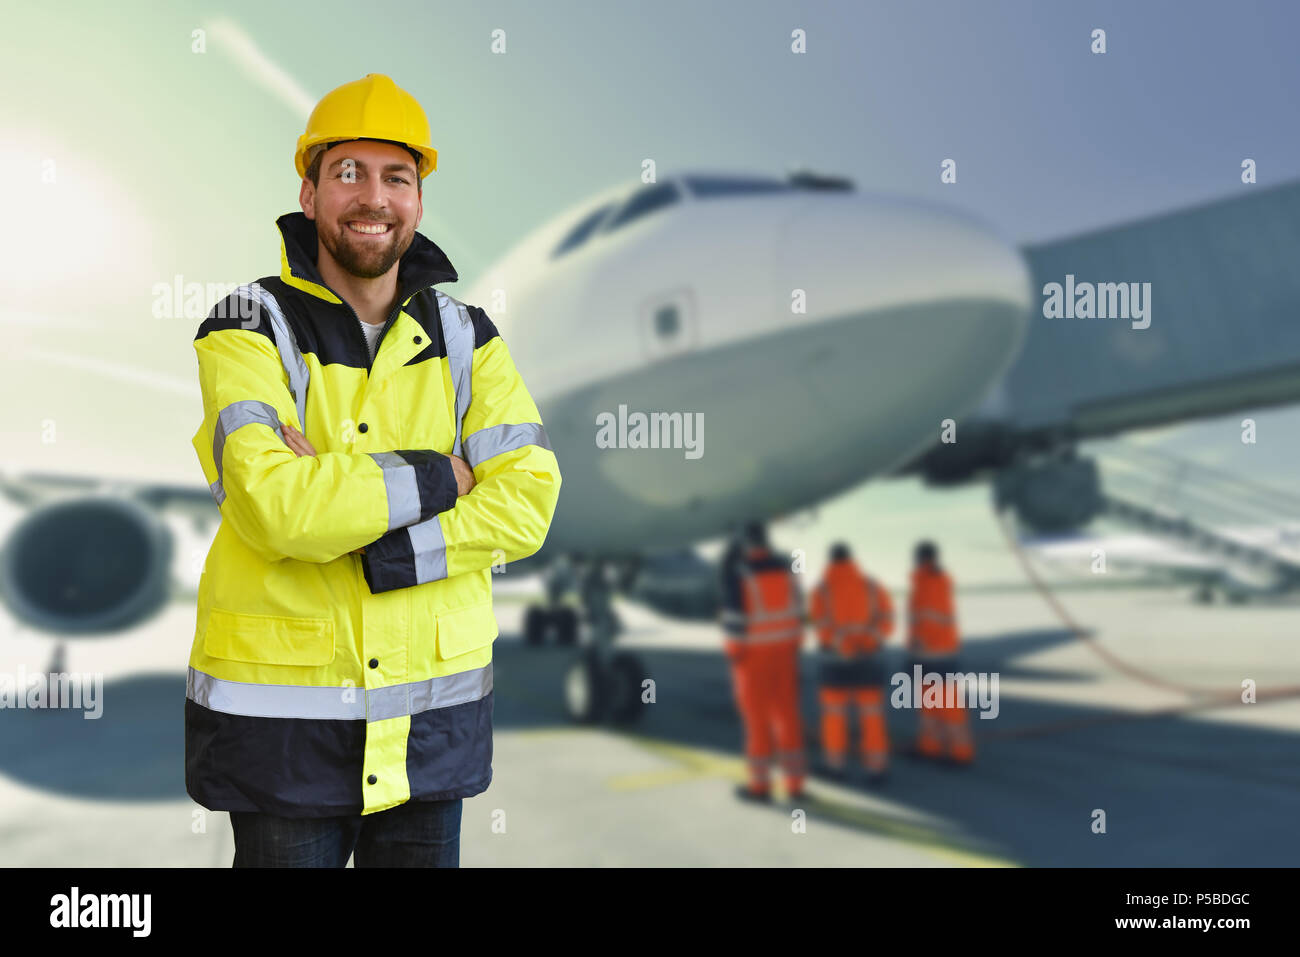 Portrait of smiling les travailleurs de l'équipe au sol à l'aéroport - manutention et le contrôle de sécurité d'un aéronef Banque D'Images